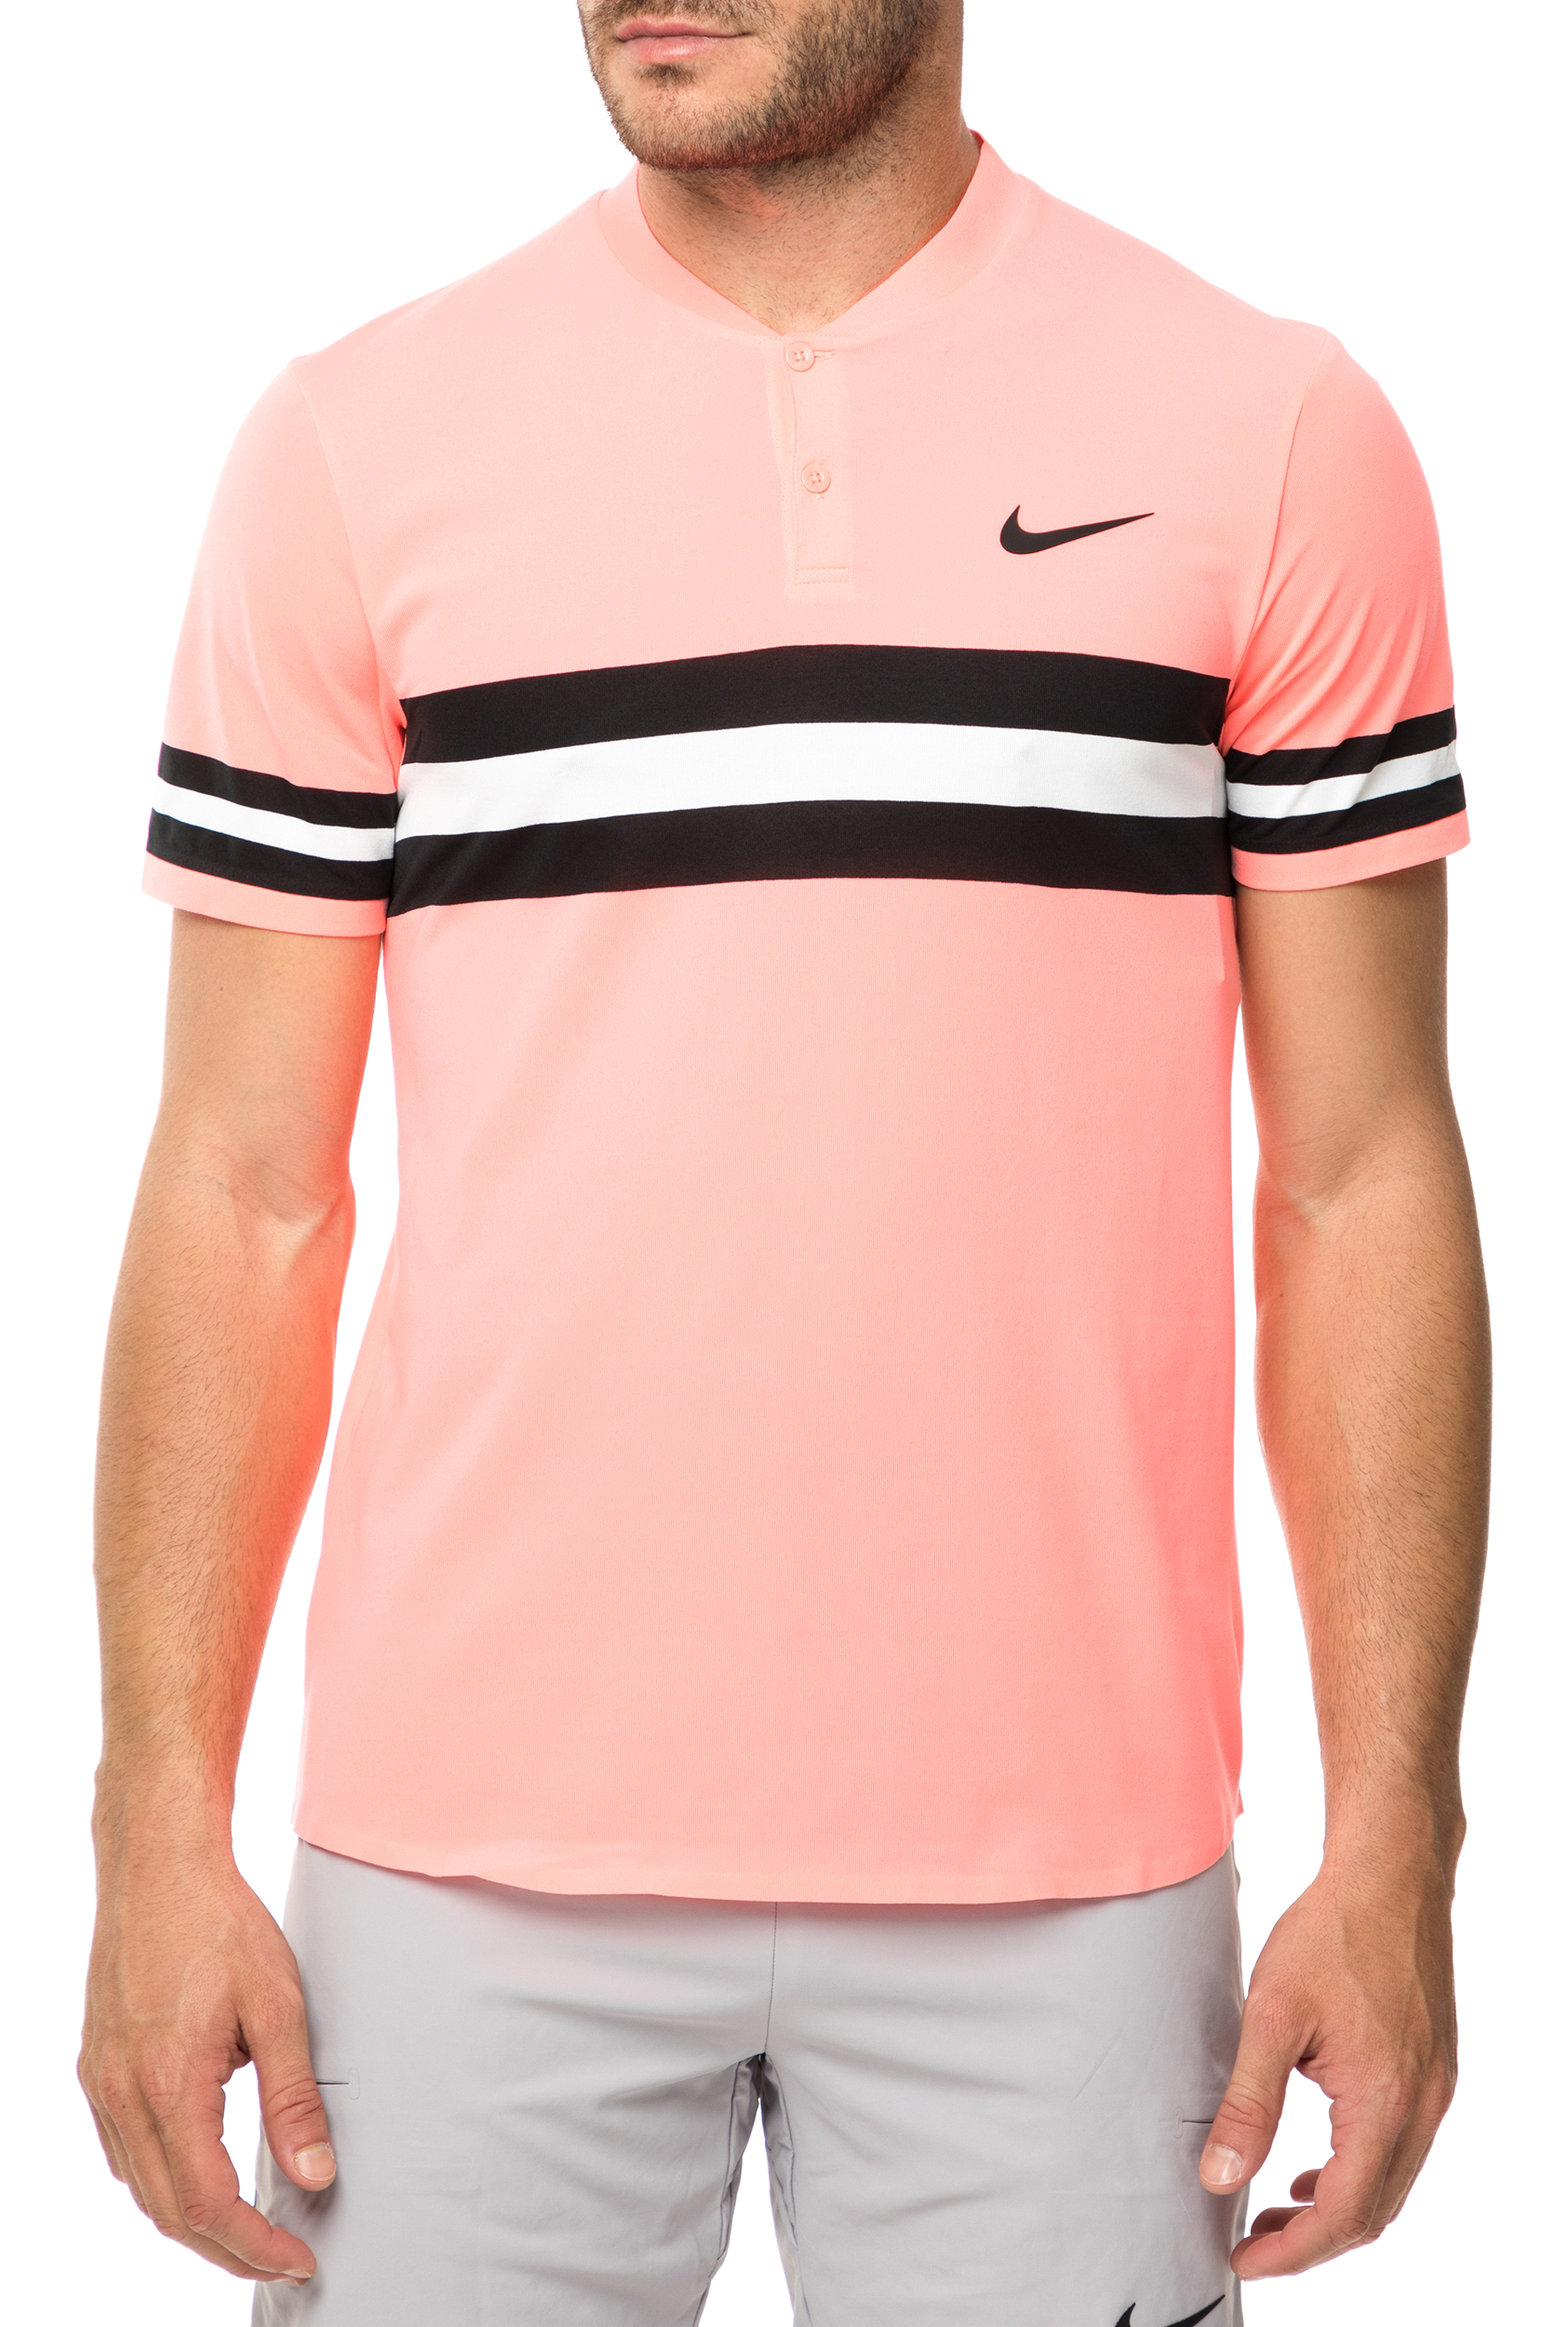 Ανδρικά/Ρούχα/Αθλητικά/T-shirt NIKE - Ανδρική πόλο μπλούζα τένις NIKE Court Dry Advantage ροζ